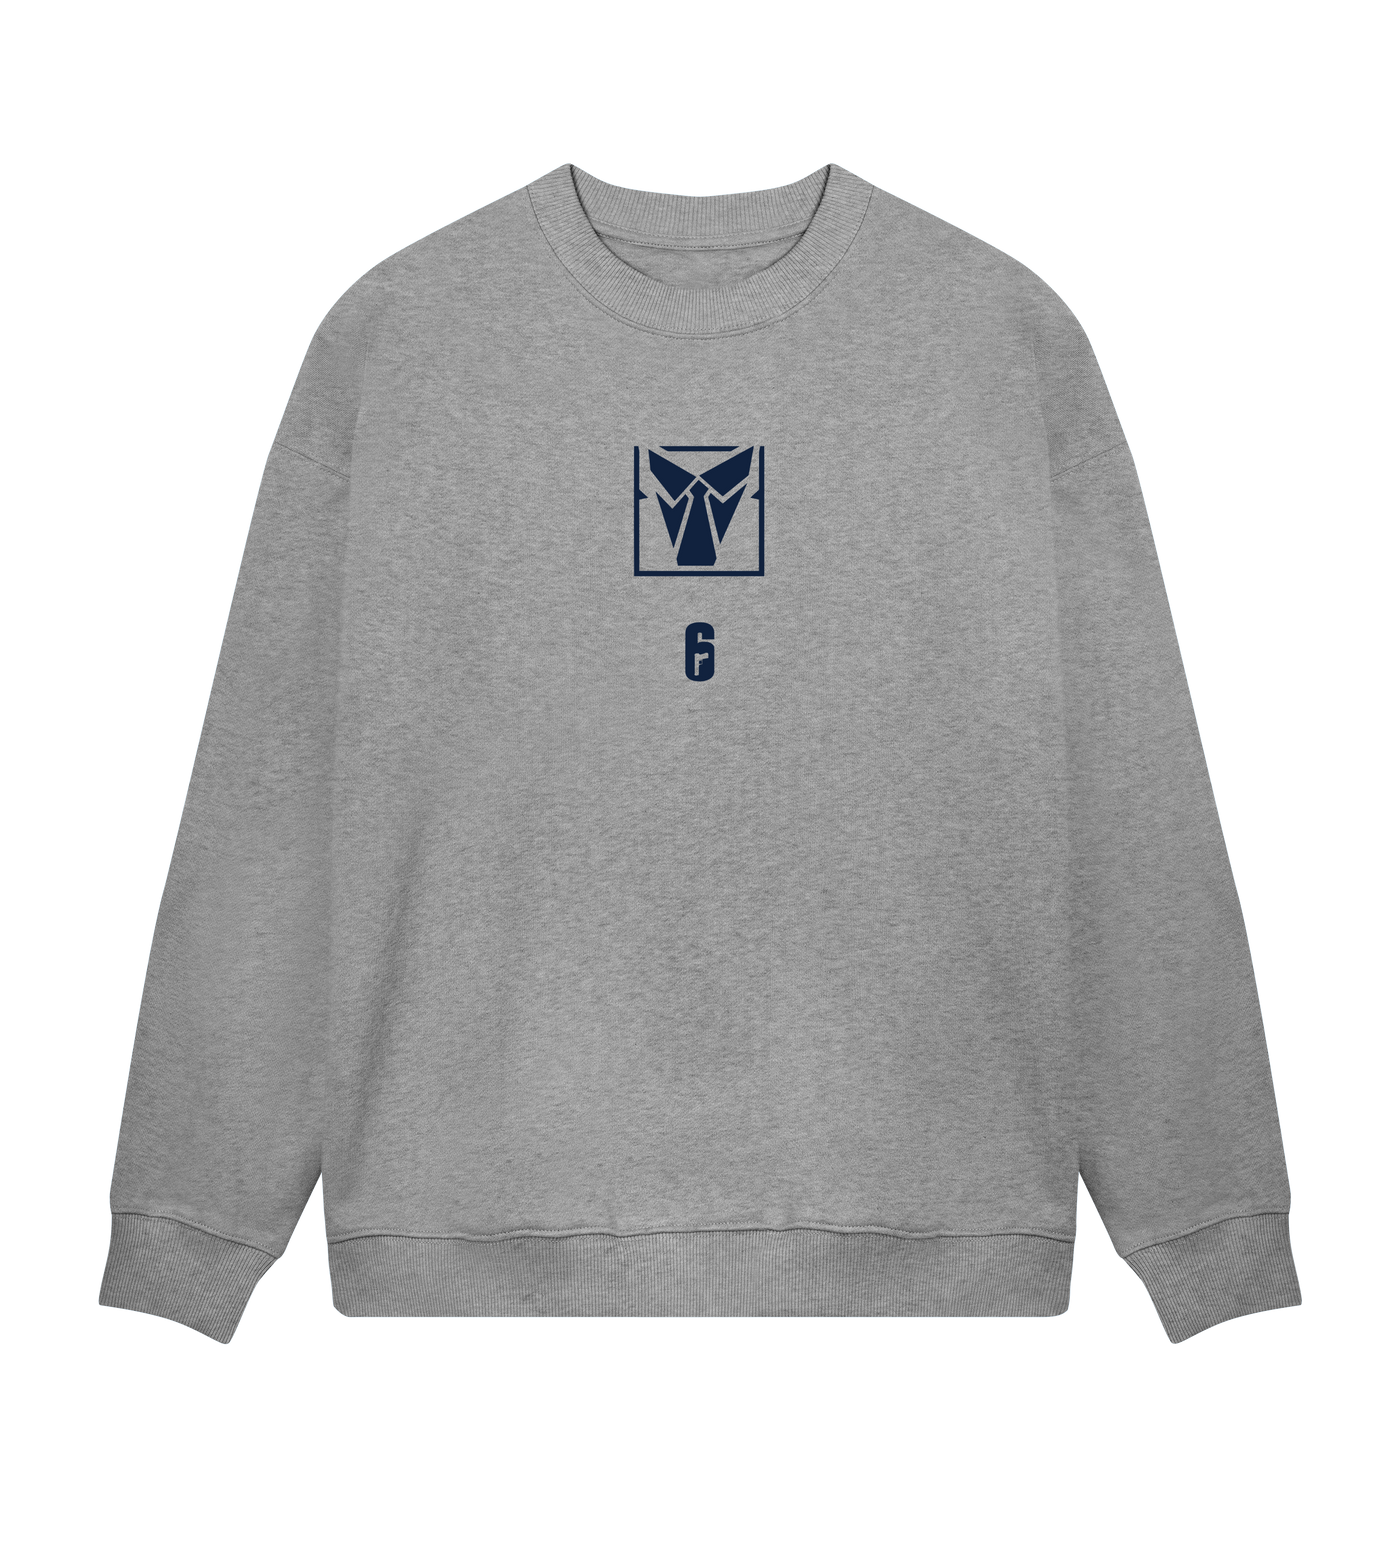 6 SIEGE - Warden Grey Sweatshirt